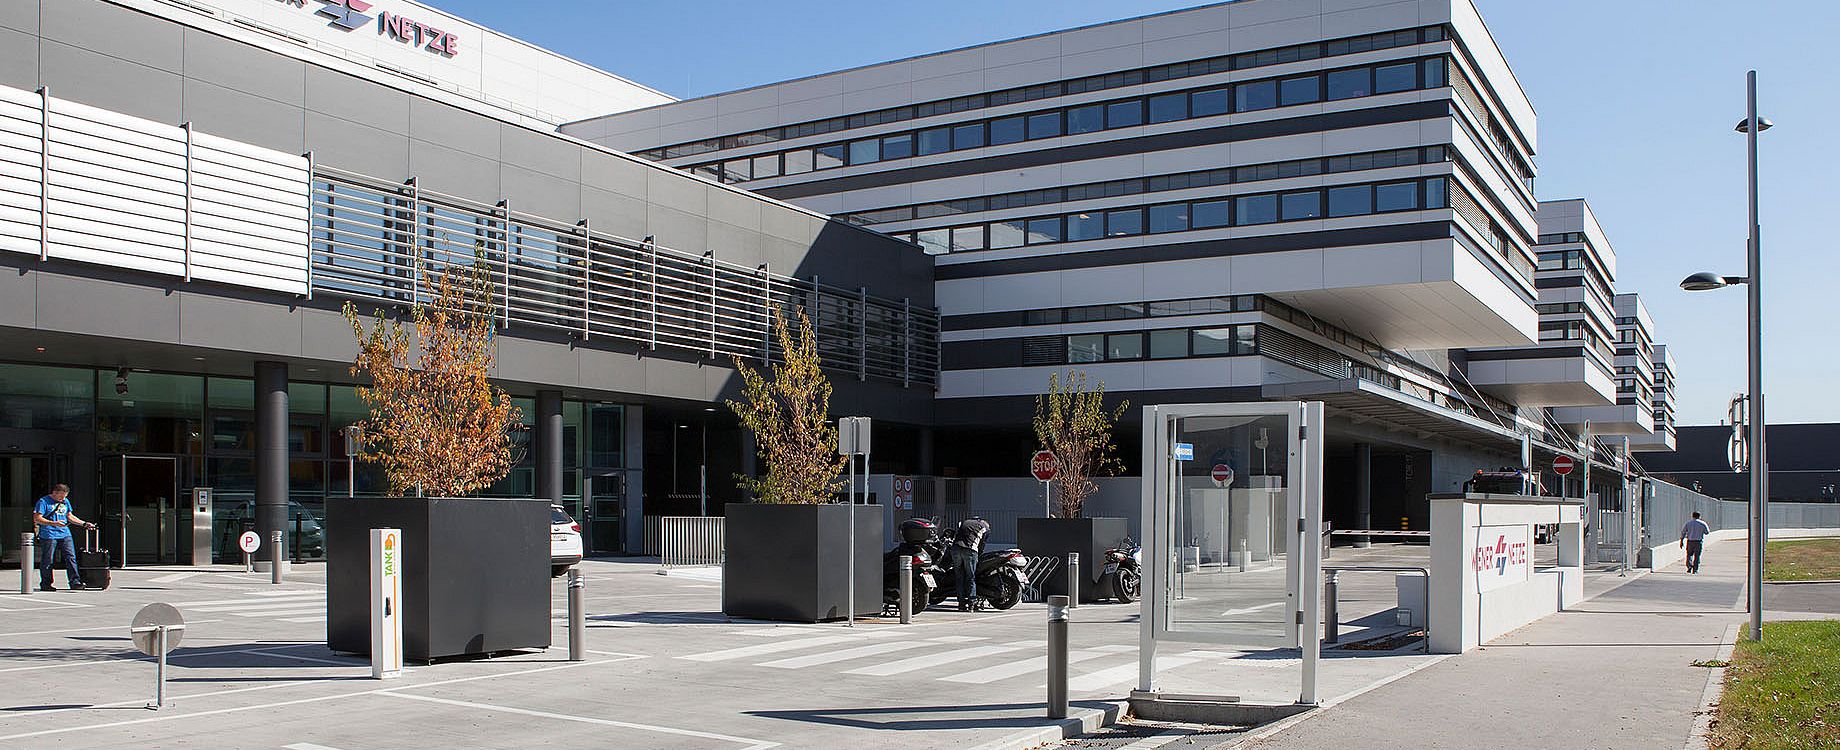 Der Smart Campus in Wien Simmering – die neue Unternehmenszentrale der Wiener Netze © M.O.O.CON / Walter Oberbramberger